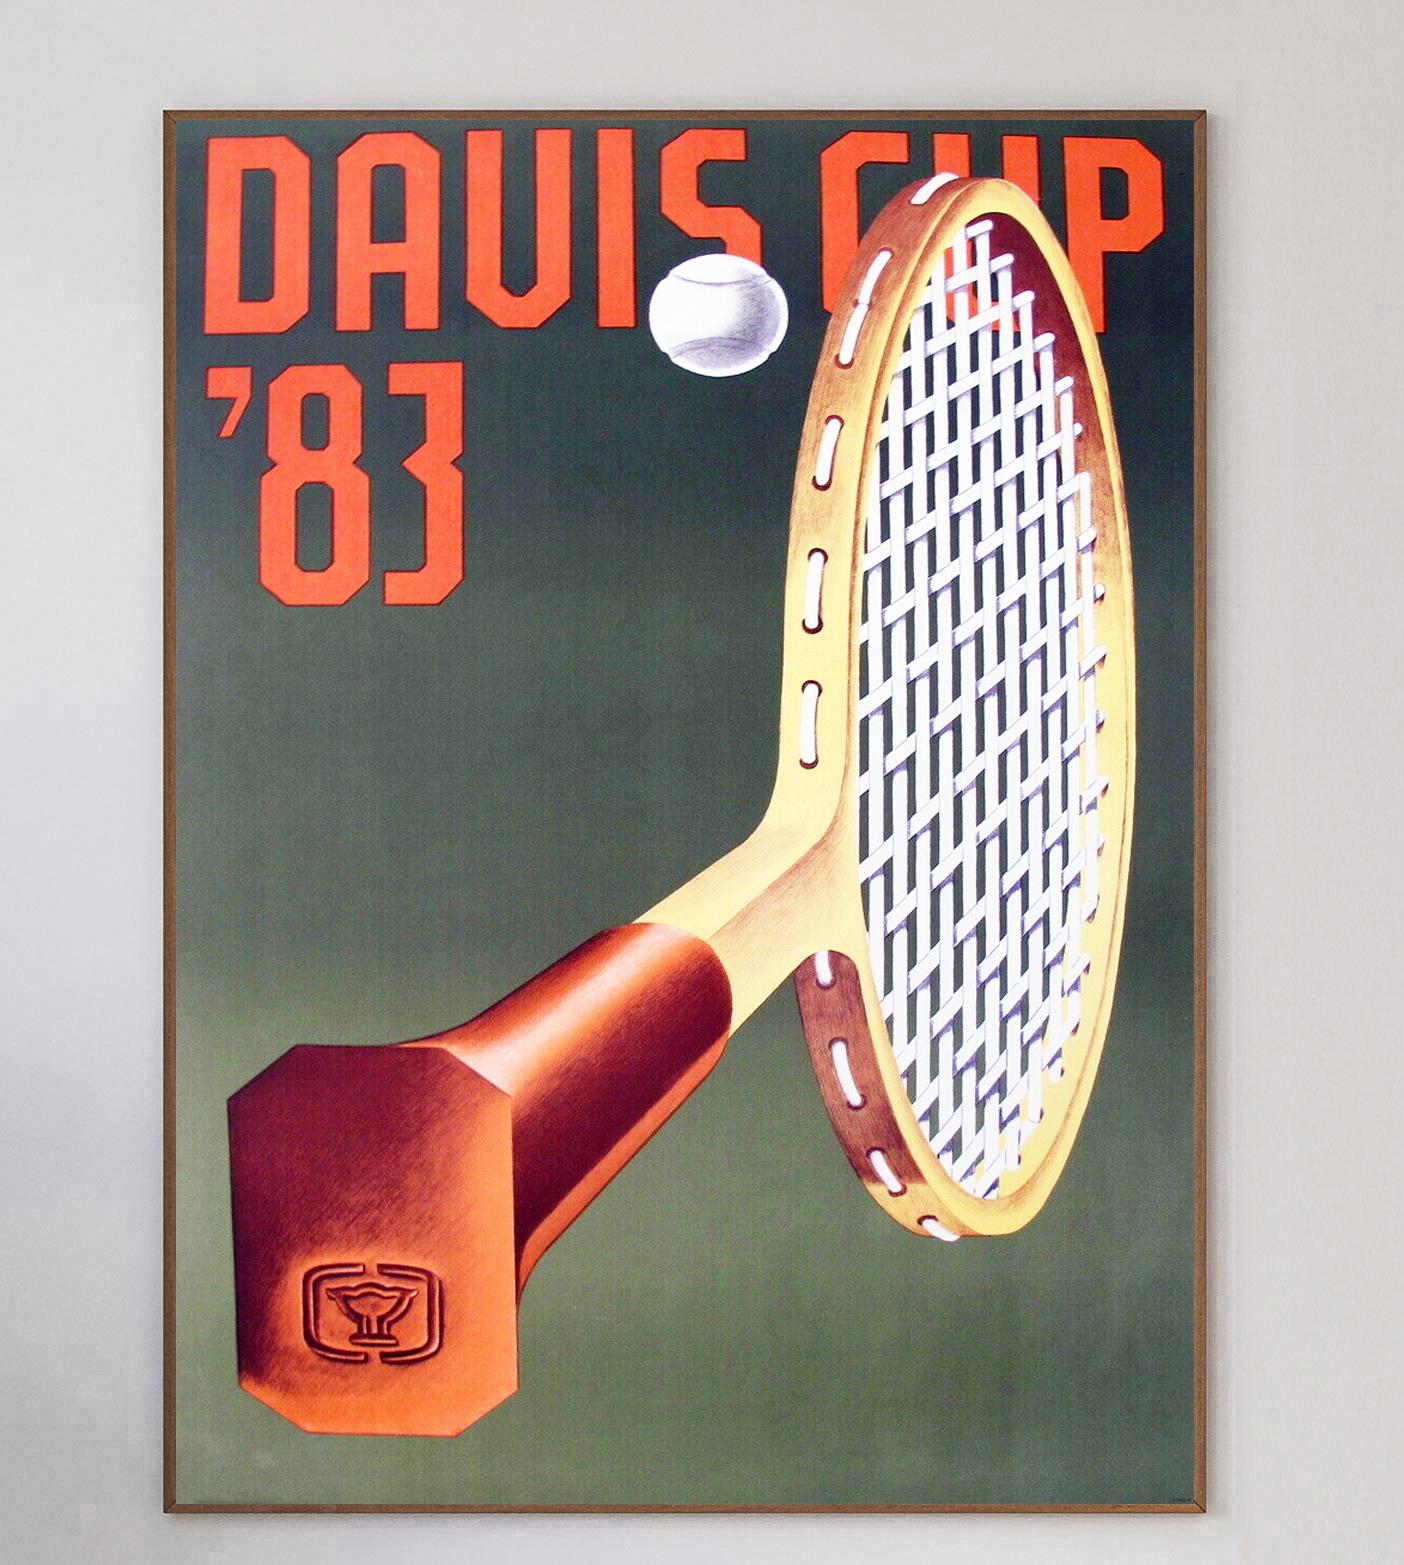 Der Davis Cup, der als 